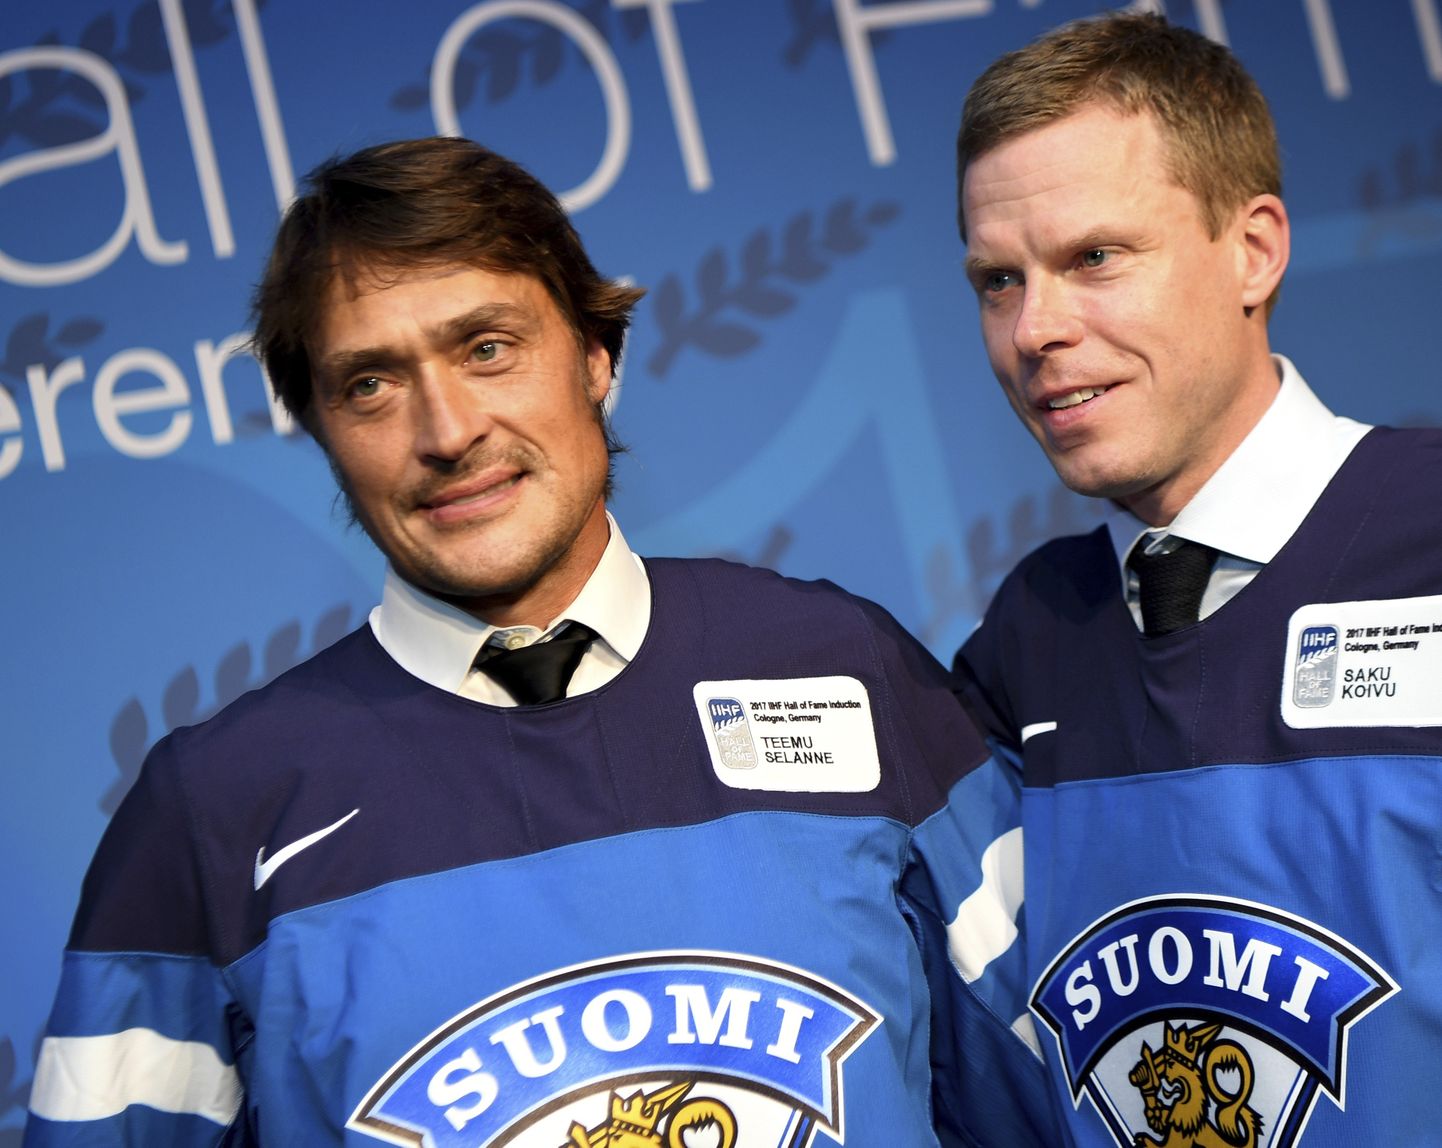 Soome jäähokilegendid Teemu Selänne ja Saku Koivu kuuluvad nende kaheksa jäähokimänmgija sekka, kelle auhinnakapis on neli olümpiamedalit. Pyeongchangis võib nendega liituda kaasmaalane Lasse Kukkonen.